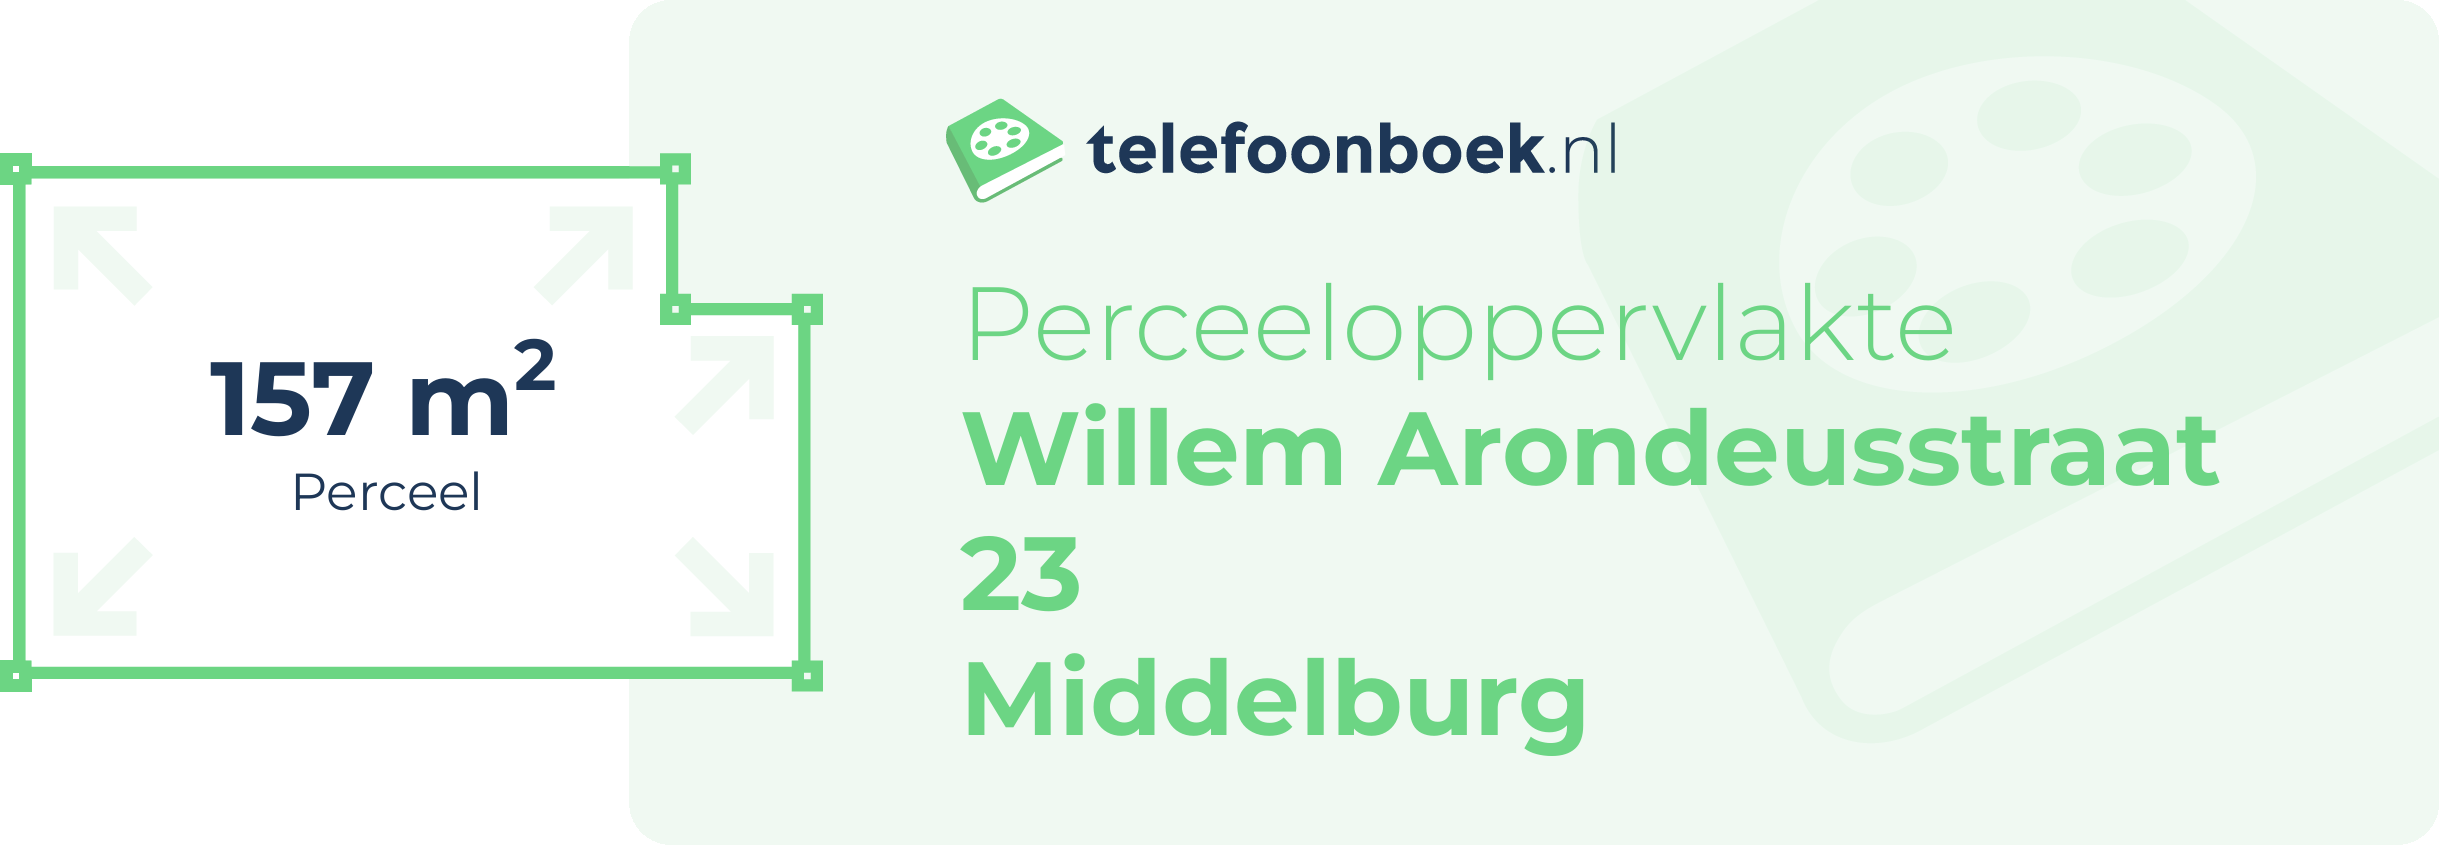 Perceeloppervlakte Willem Arondeusstraat 23 Middelburg